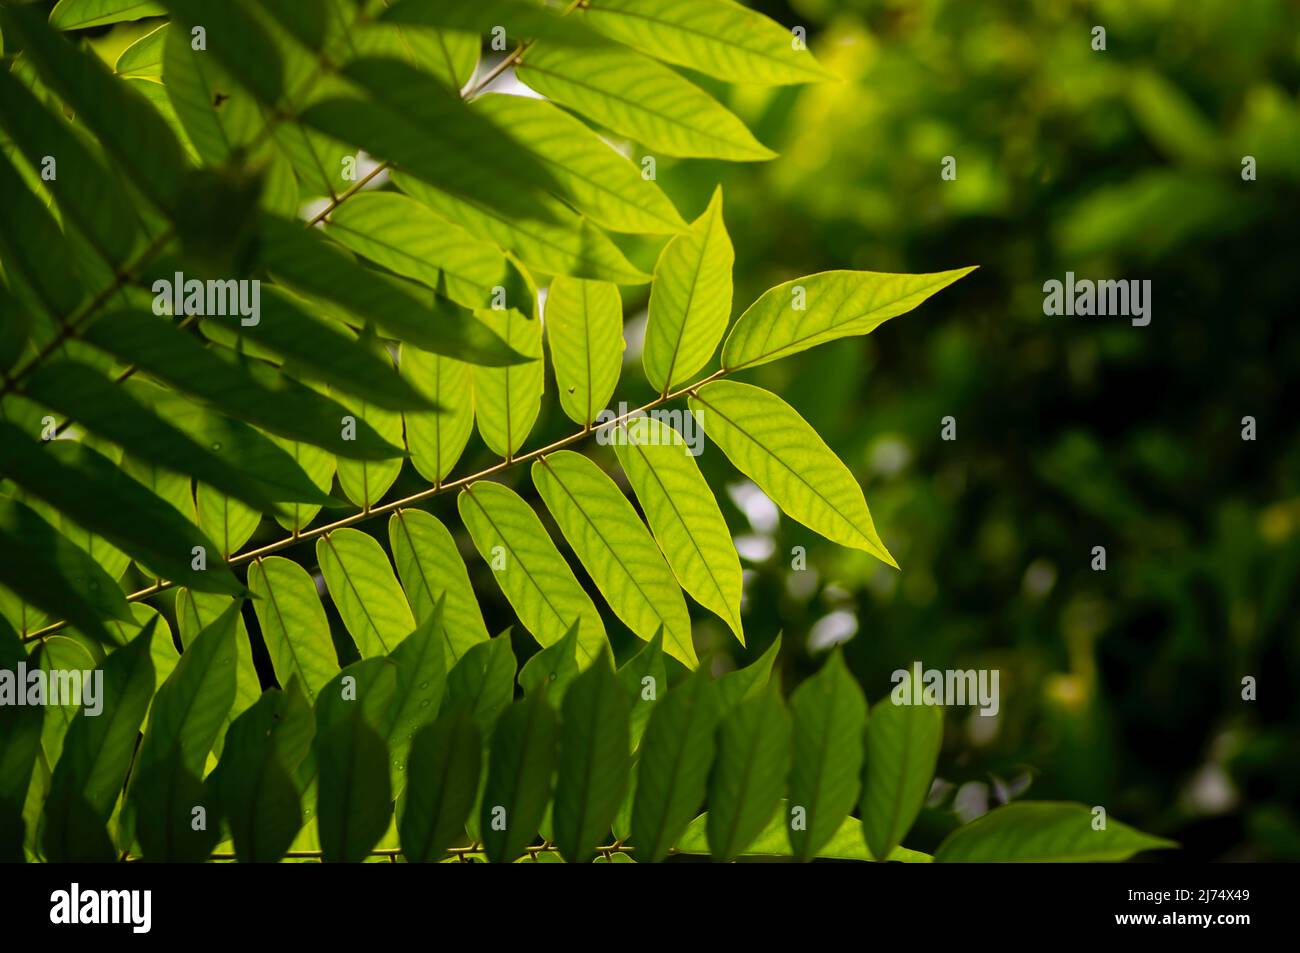 Defokussiert von Averrhoa bilimbi grünen Blättern, allgemein bekannt als  Bilimbi, Gurkenbaum Stockfotografie - Alamy